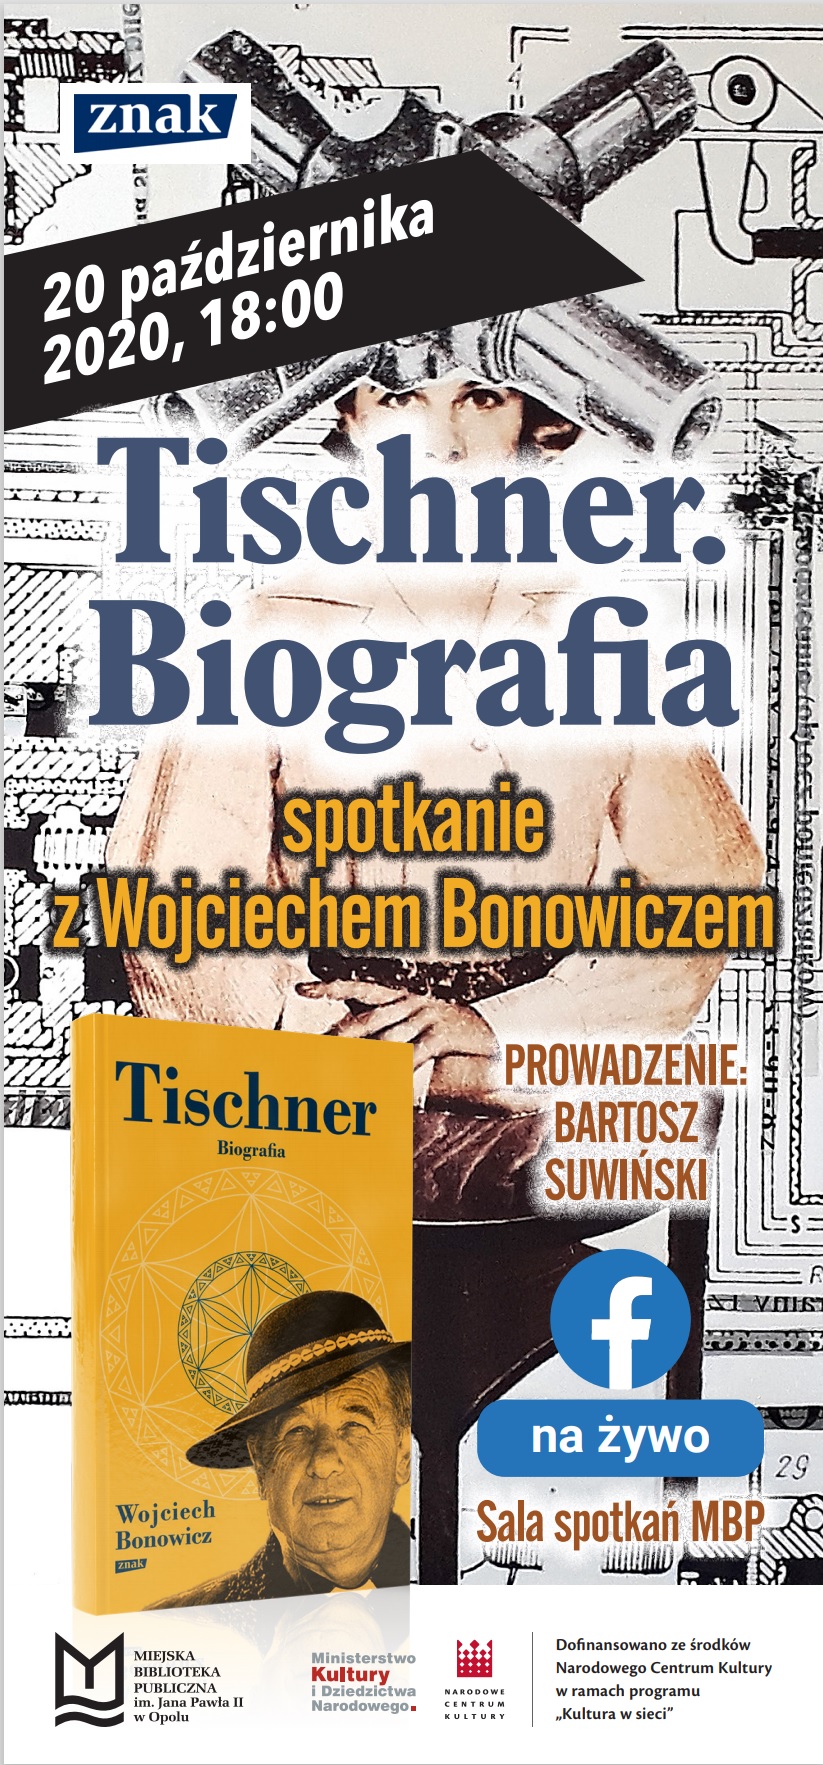 Tischner. Biografia – spotkanie z Wojciechem Bonowiczem w MBP